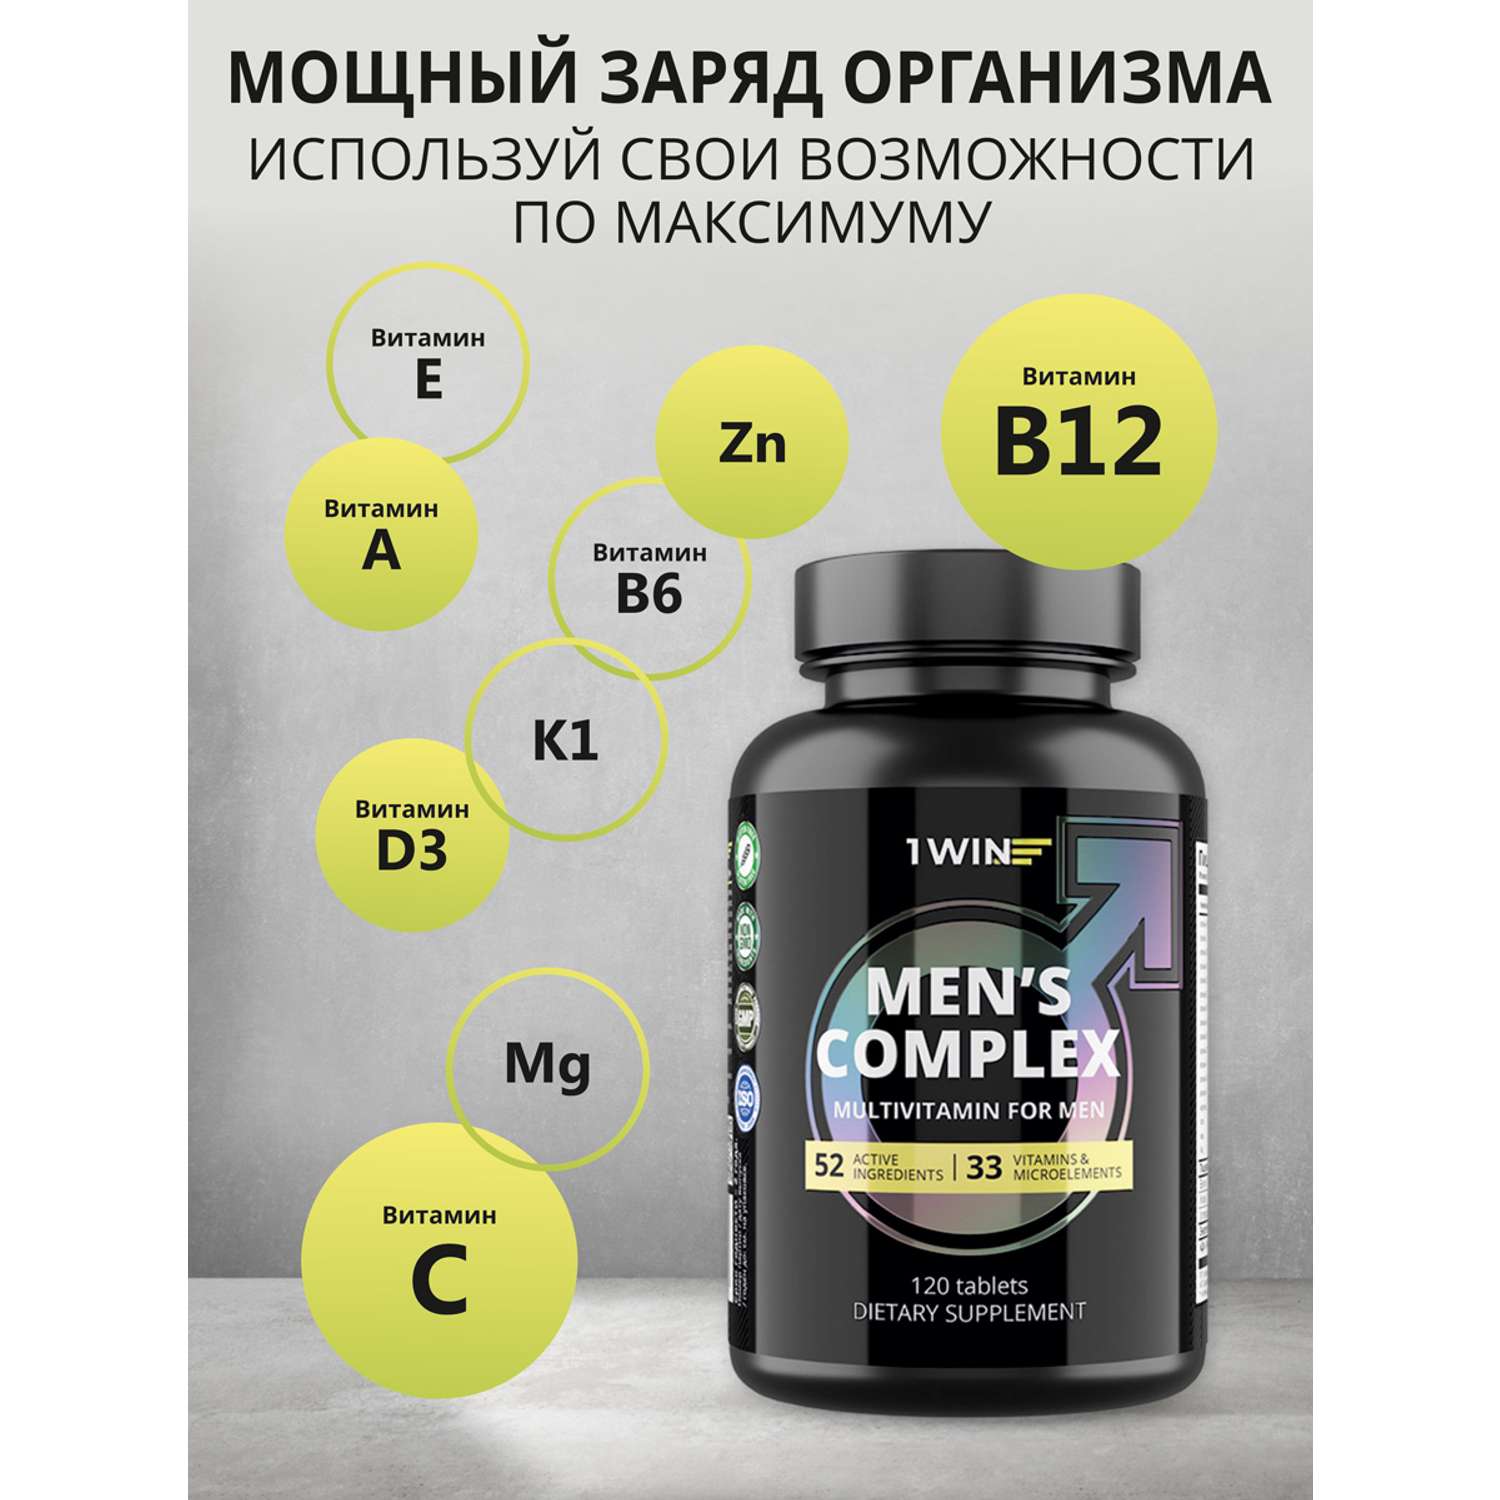 Купить мужские витамины. Комплекс витаминов для мужчин. Витамины мужские комплекс. Витамины БАДЫ. Витаминно-минеральный комплекс для мужчин.